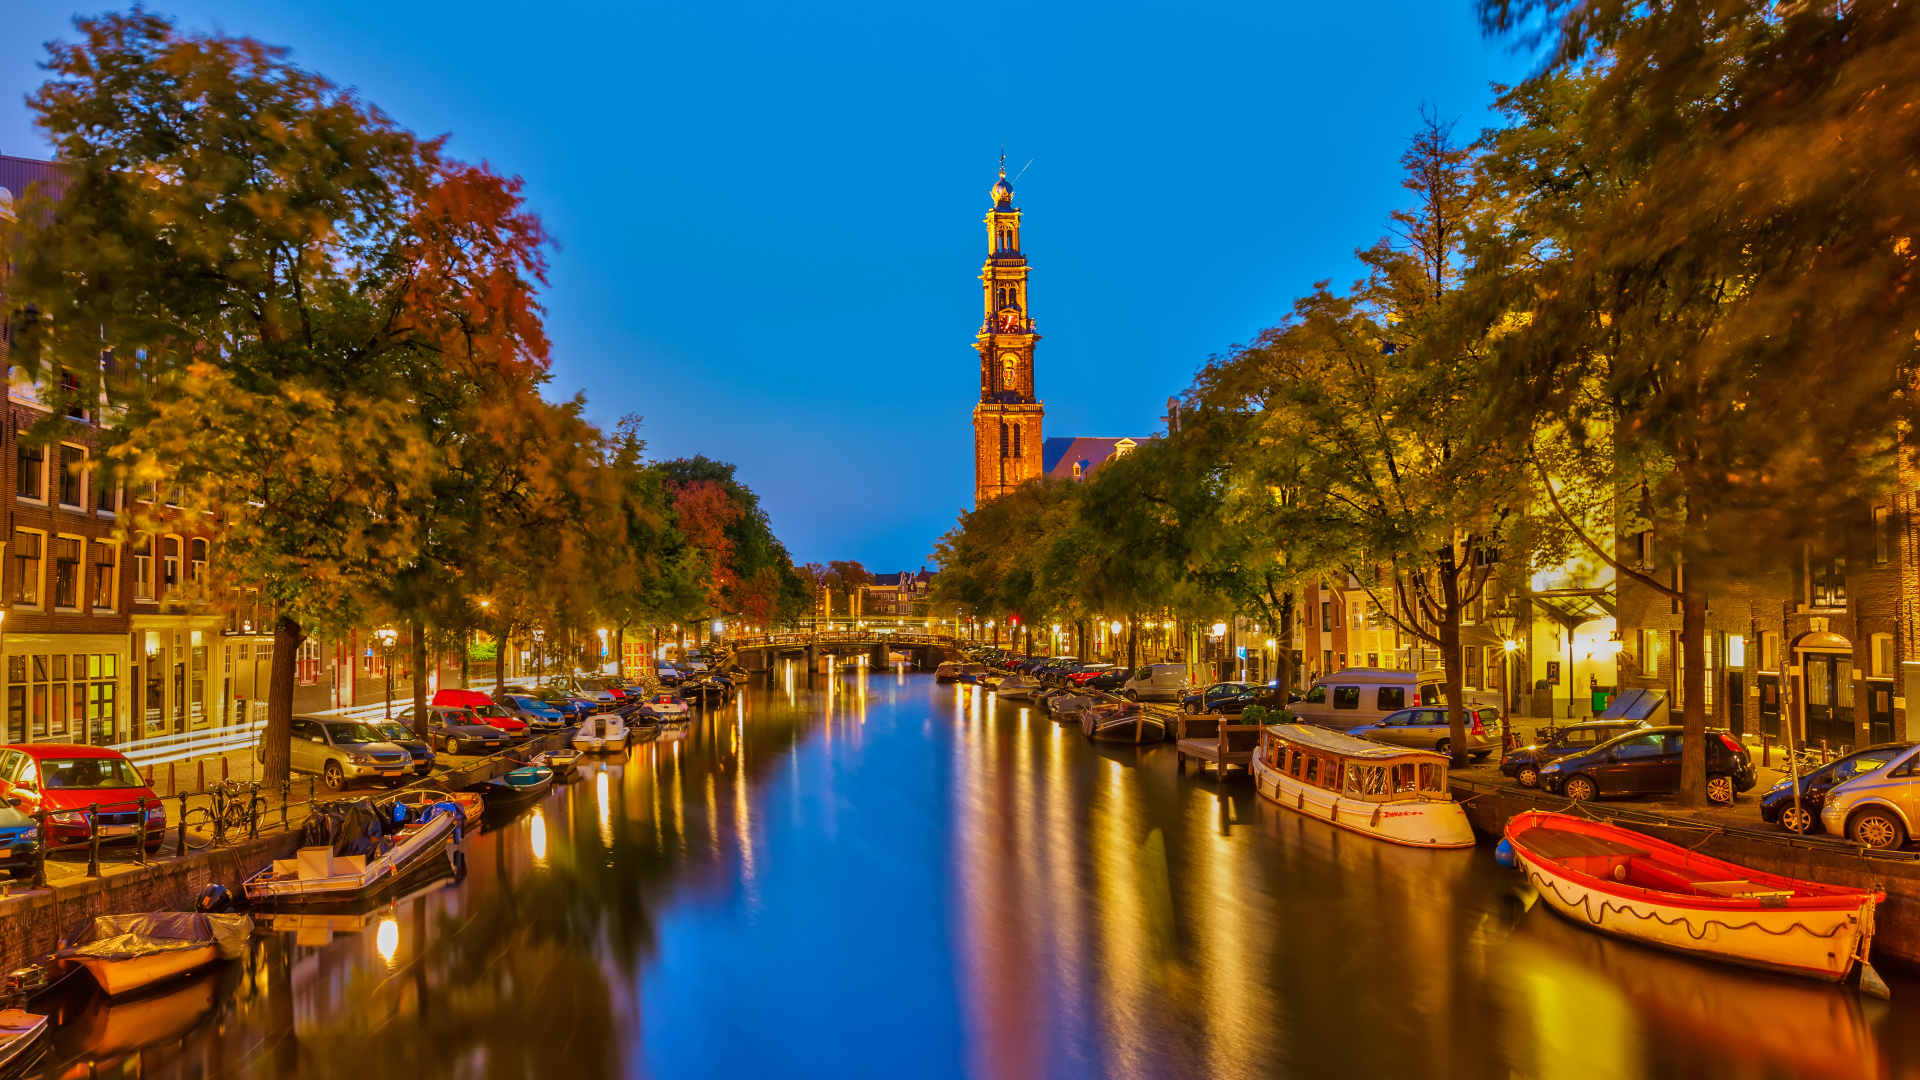 阿姆斯特丹运河, 运河, 人体内的水, 反射, 里程碑 壁纸 1920x1080 允许